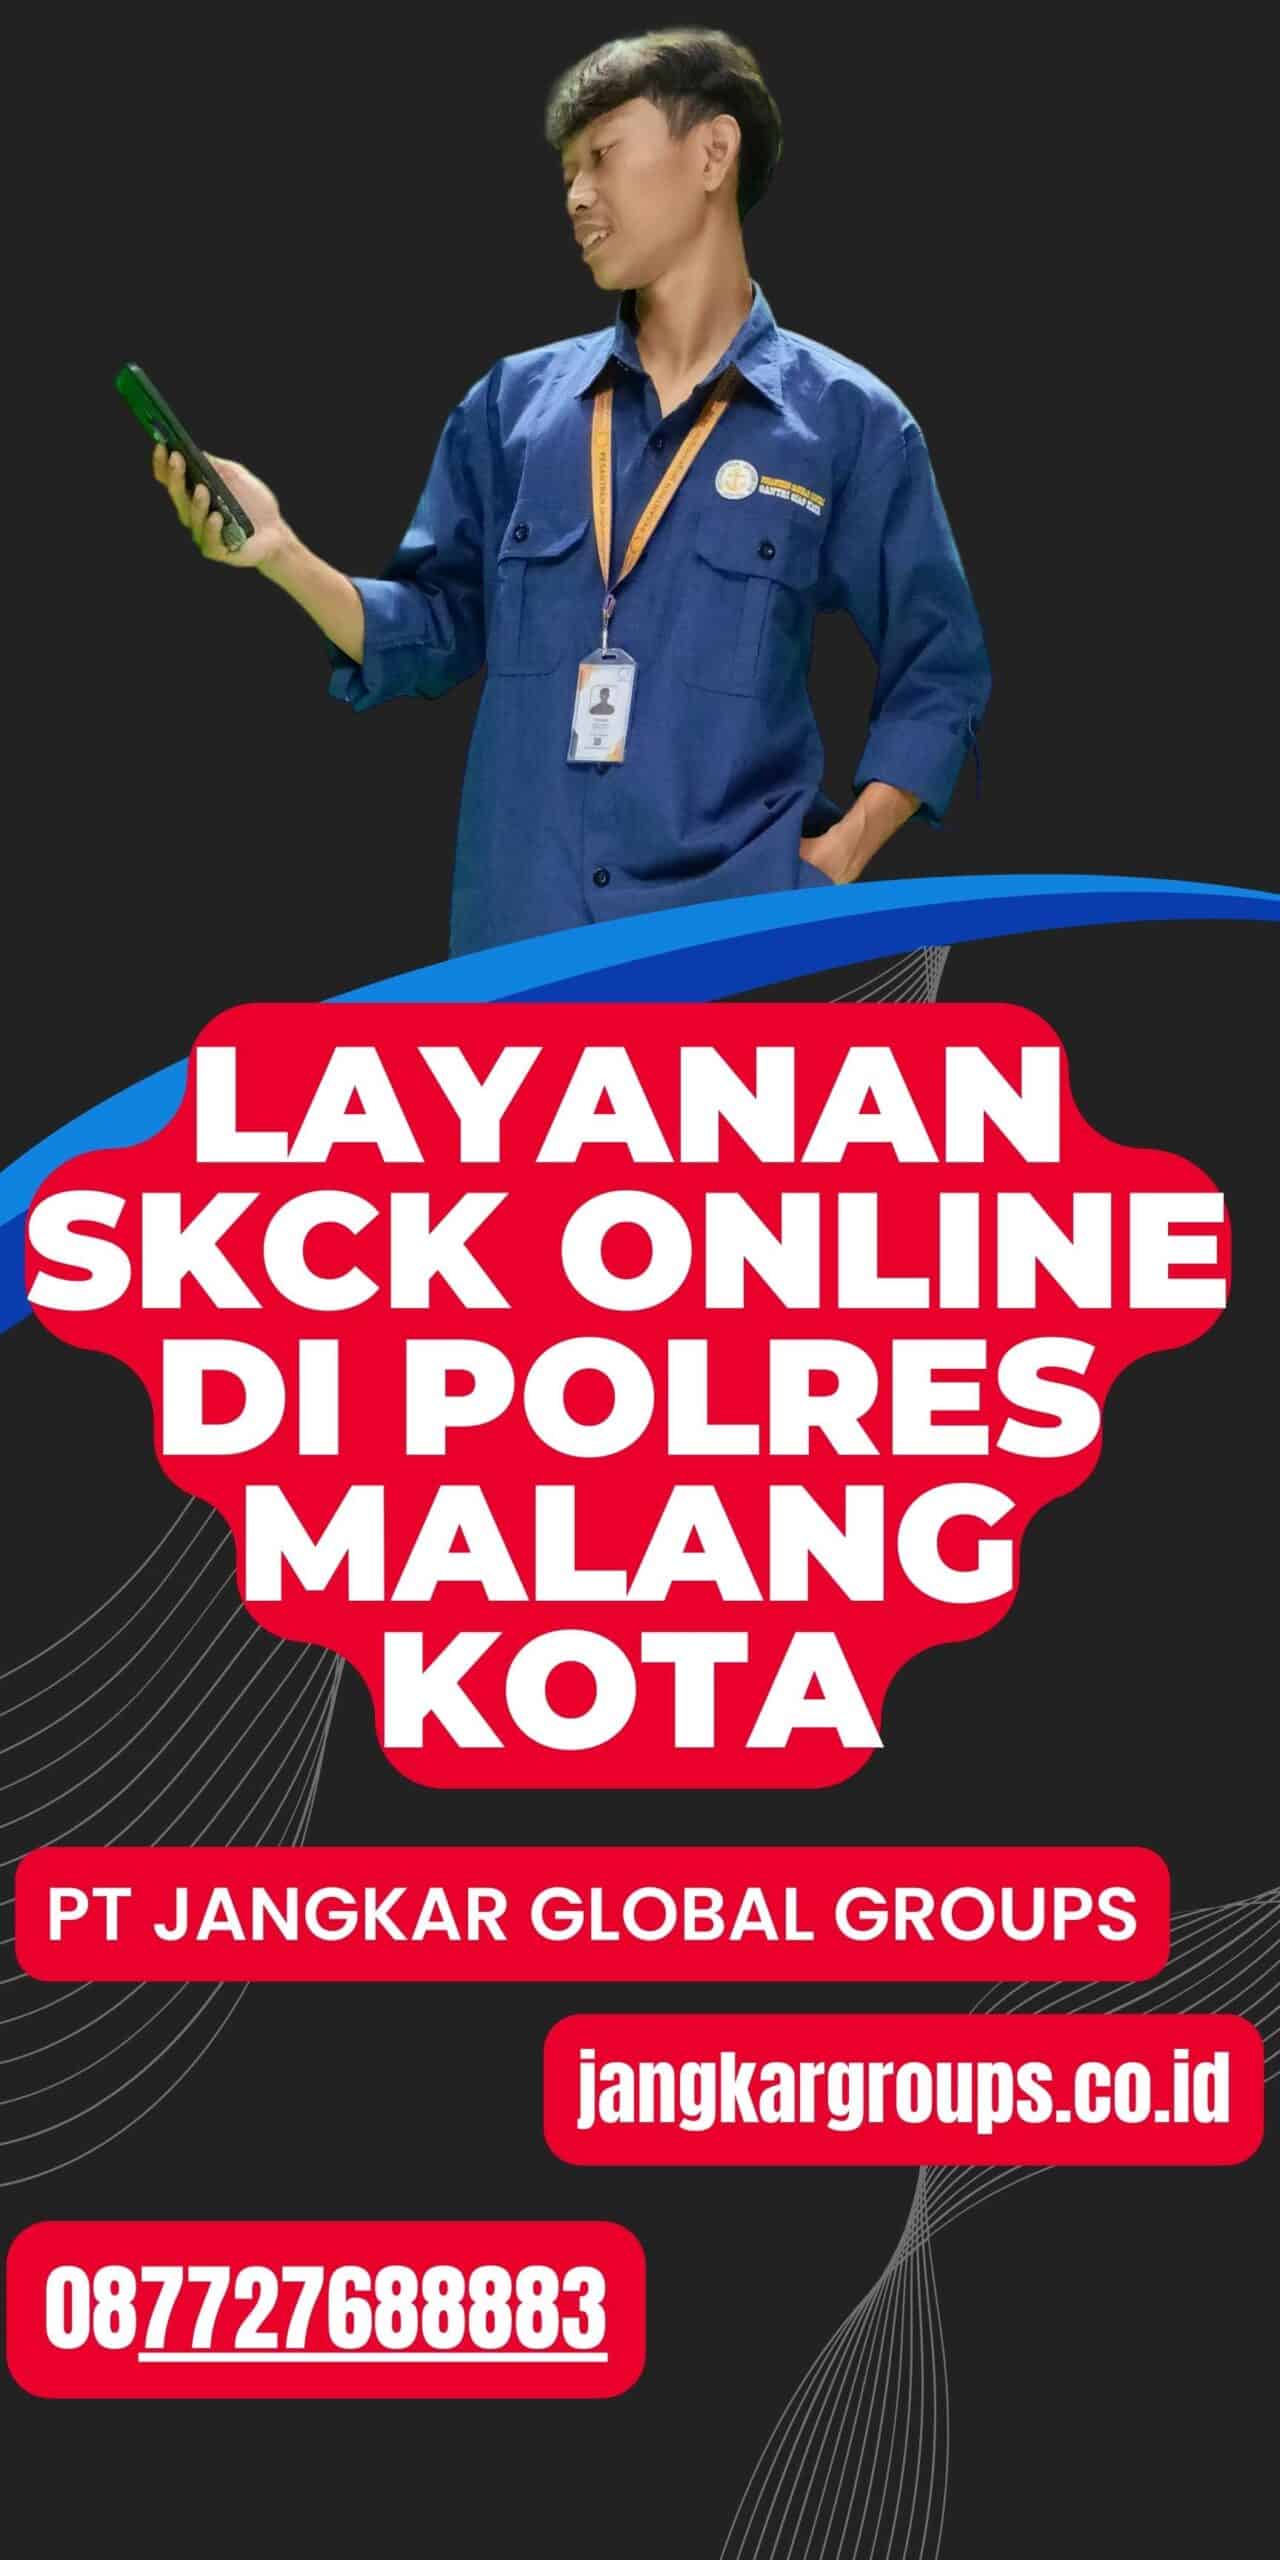 Layanan SKCK Online di Polres Malang Kota